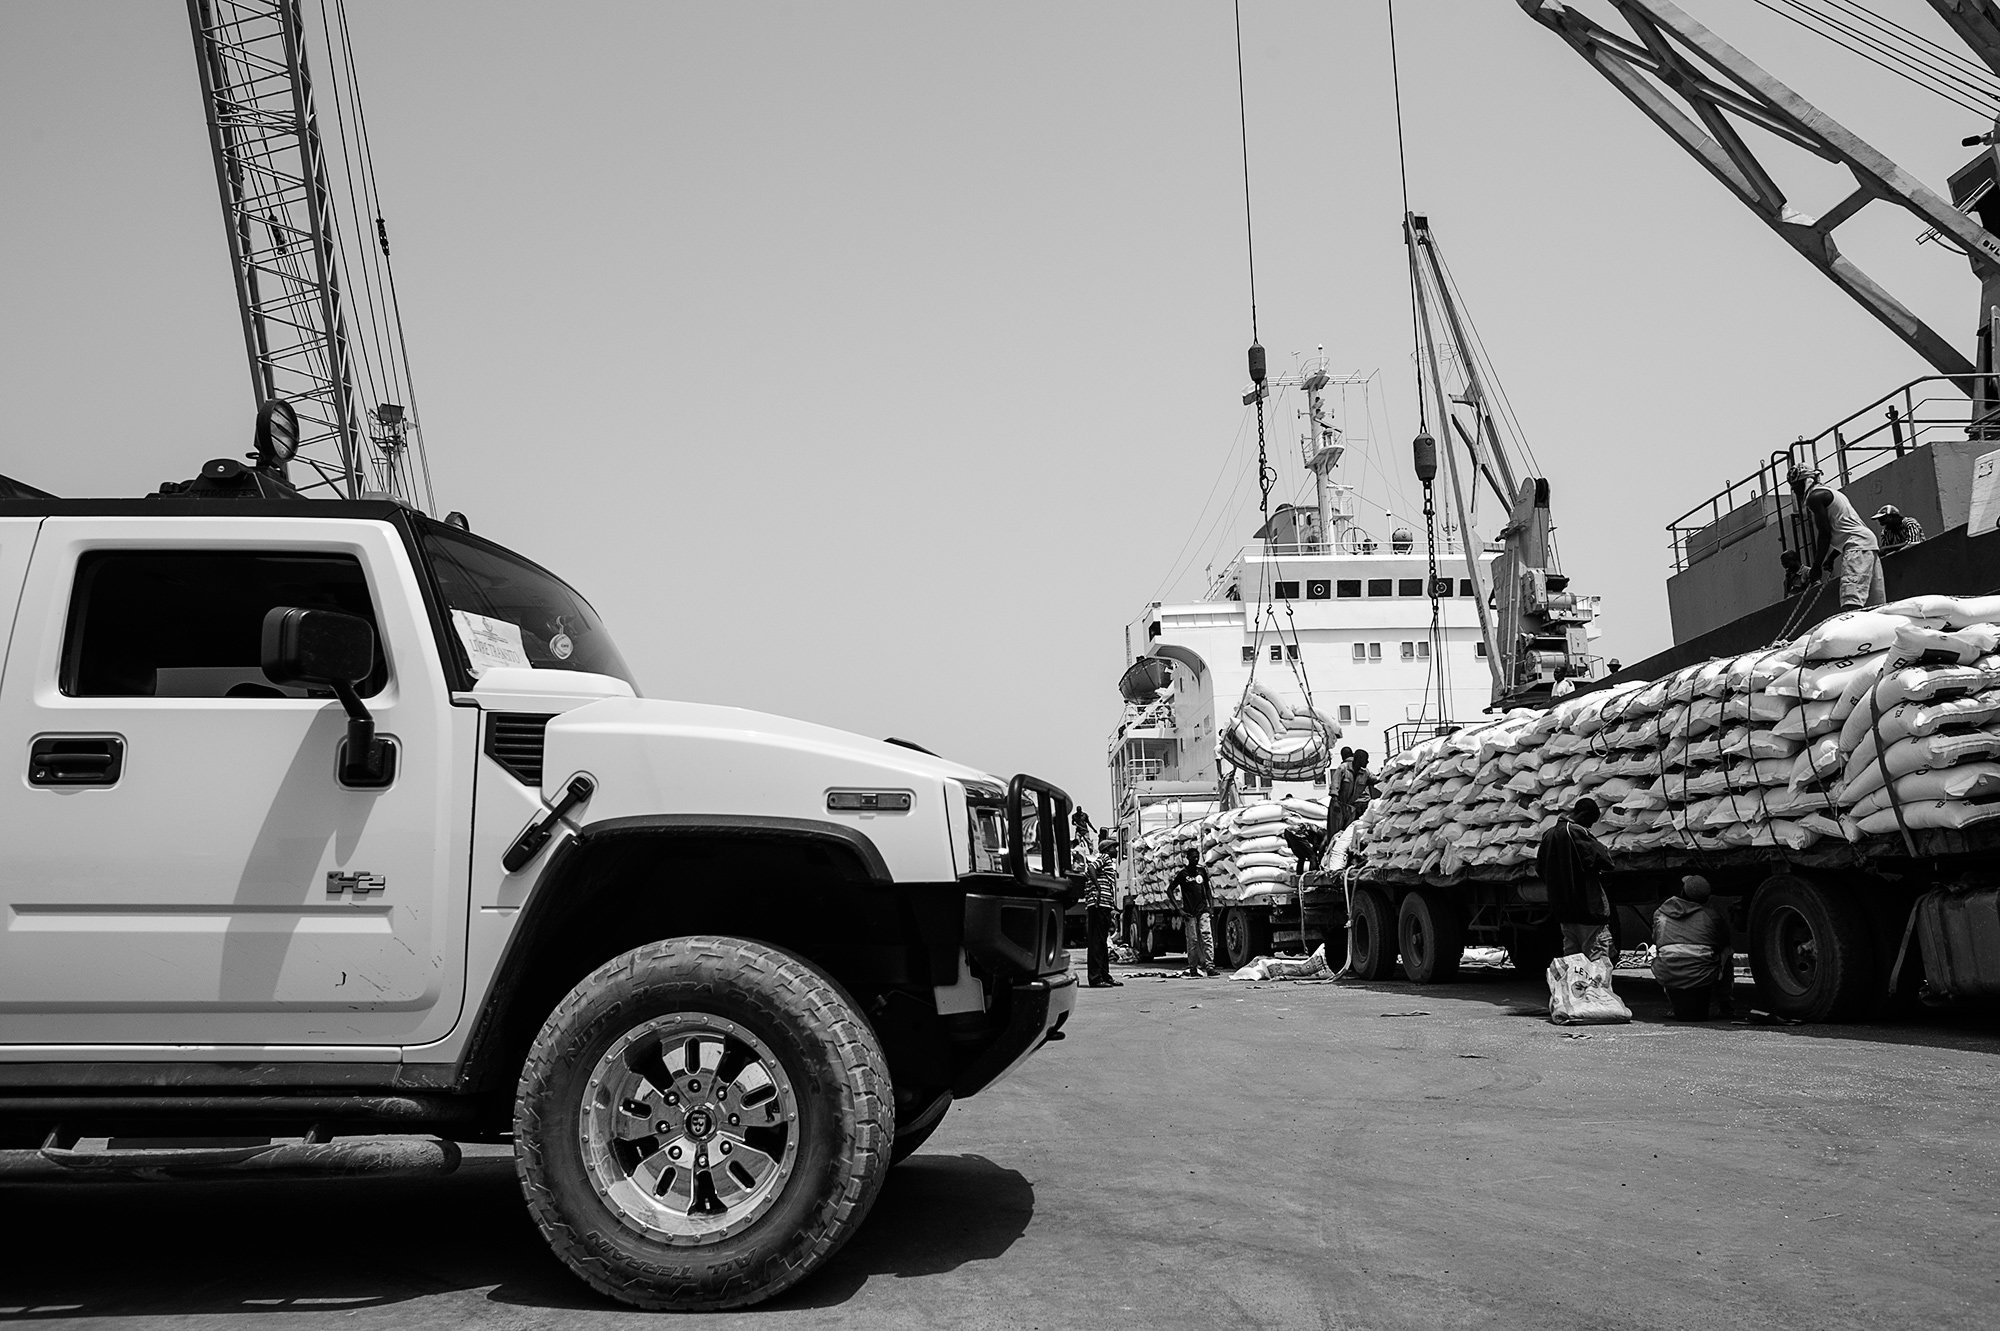 Drogenlieferung im Hafen von Guinea-Bissau